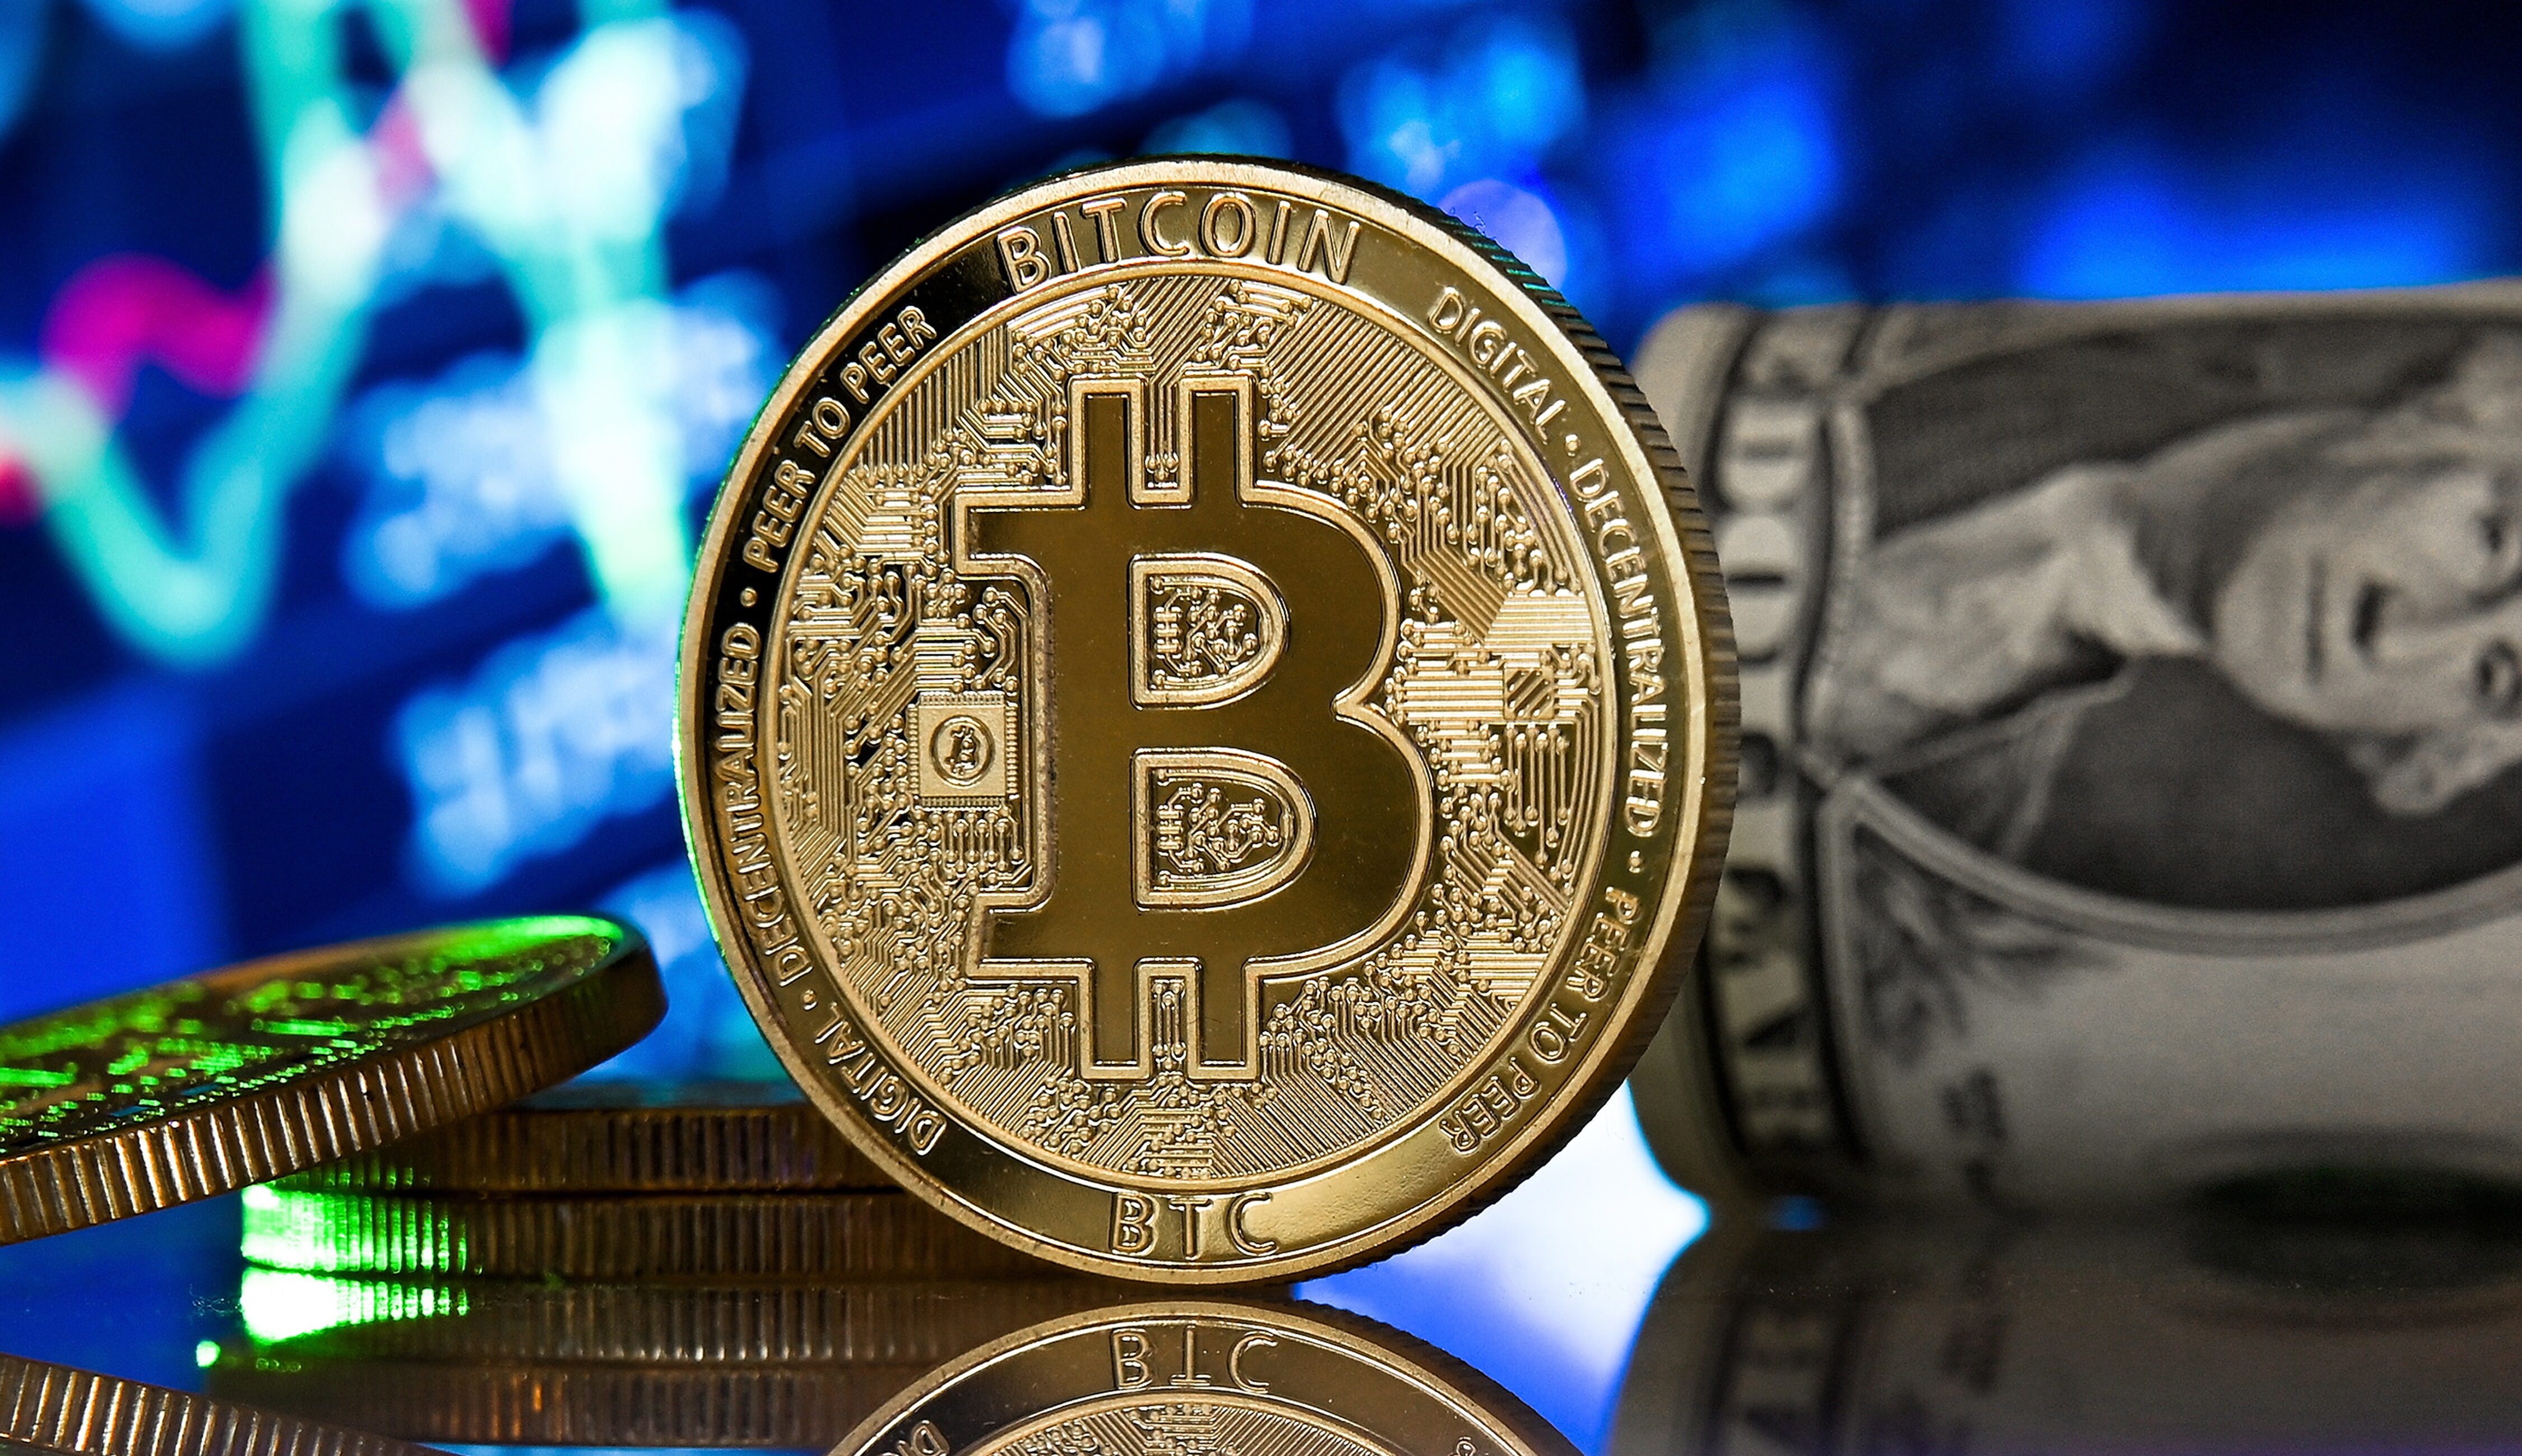 O preço atual de um Bitcoin é de US$ 30.264 com um volume de negociação de US$ 10 bilhões nas últimas 24 horas